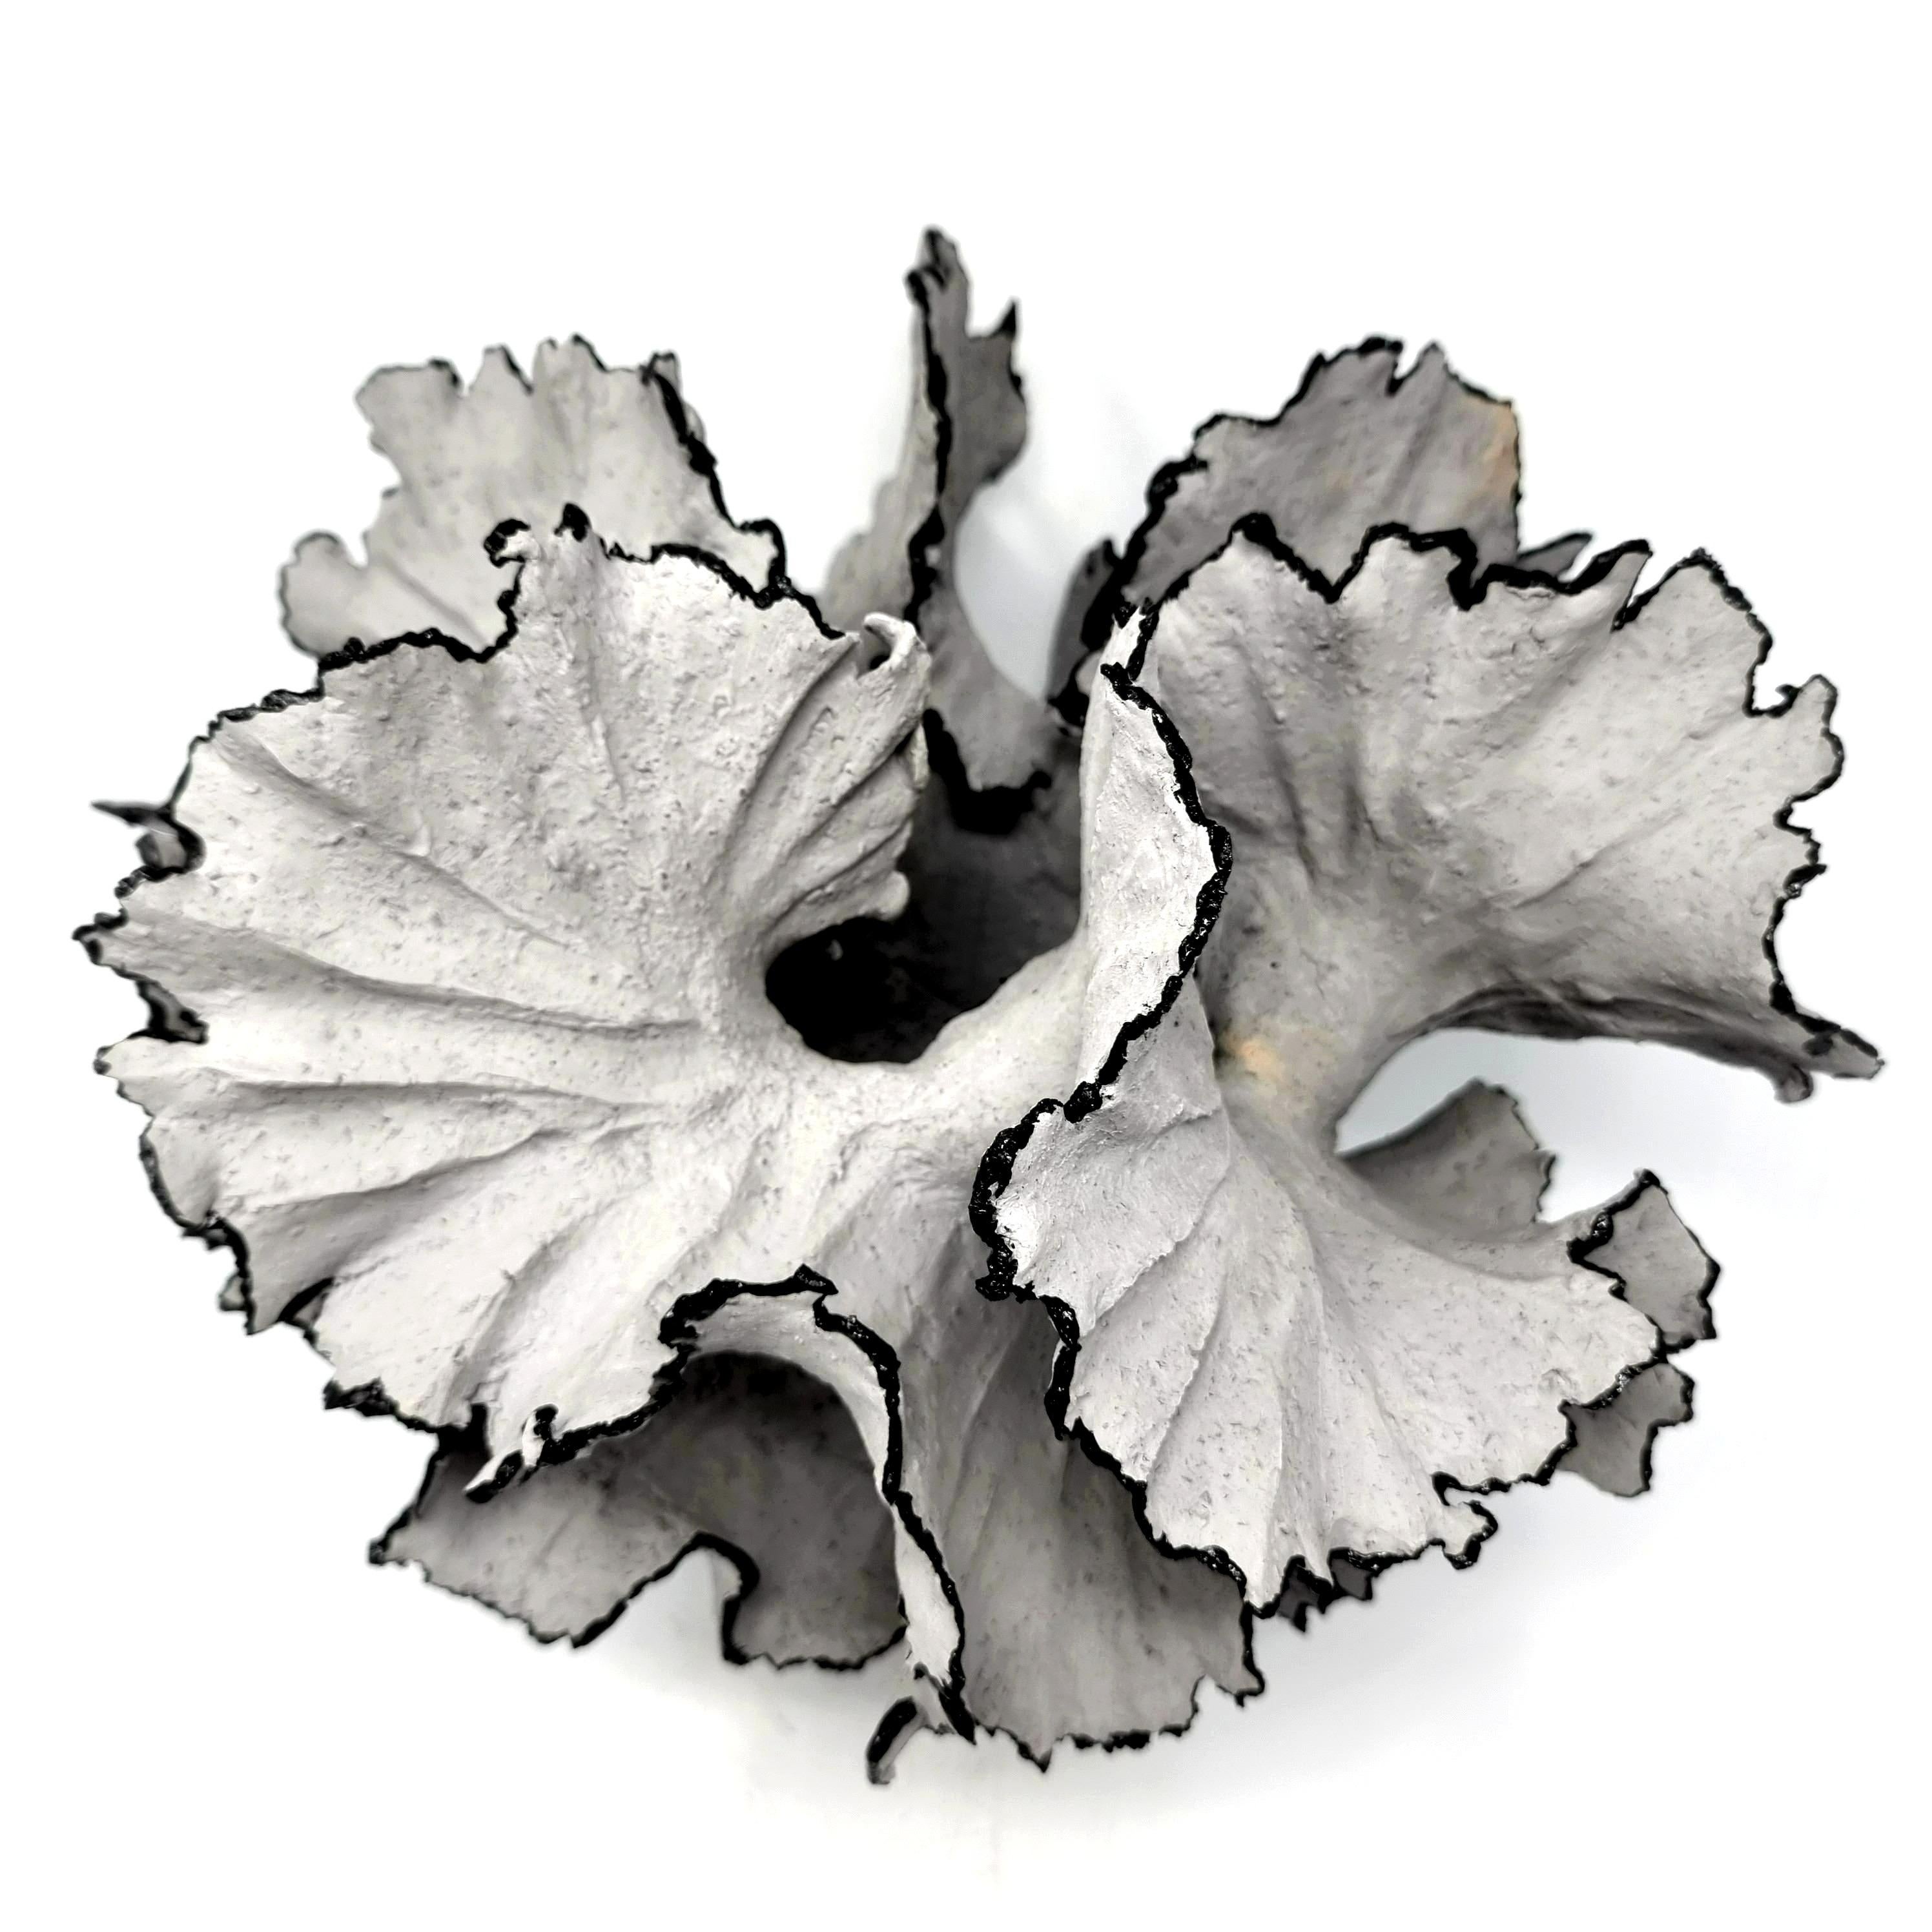 Handgefertigte Stonewear-Skulptur aus grauem Steingut-Ton. Die Edgaes sind mit schwarzer Porzellanfarbe gefärbt. 

Sie wird von Hand geformt, wobei langsam Windungen und Ton hinzugefügt werden, um das Endergebnis zu erzielen. Es handelt sich um ein